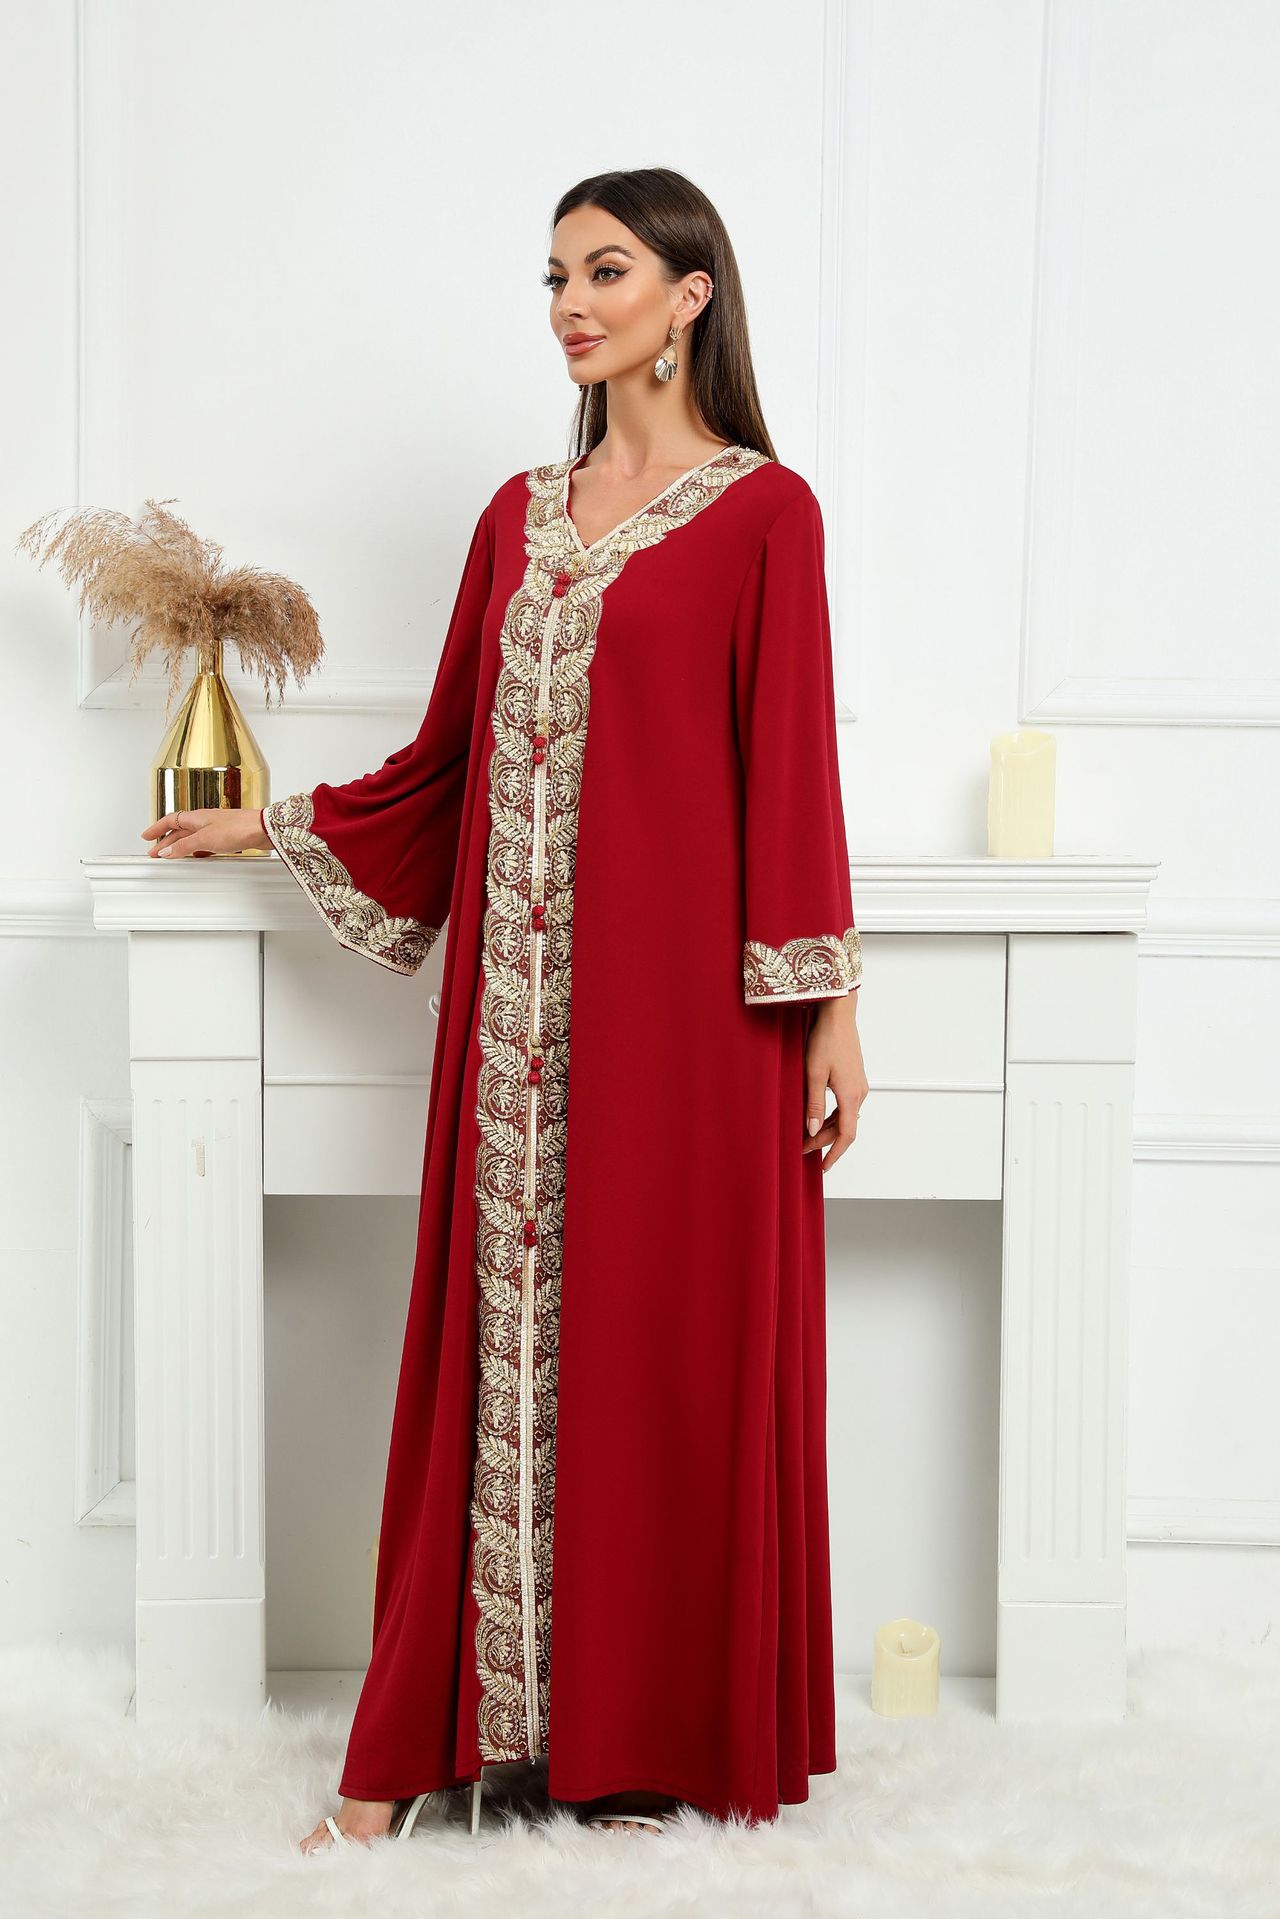 ZD001 abaya外贸电商中东跨境穆斯林女装长袍迪拜大袍织带连衣裙详情图3